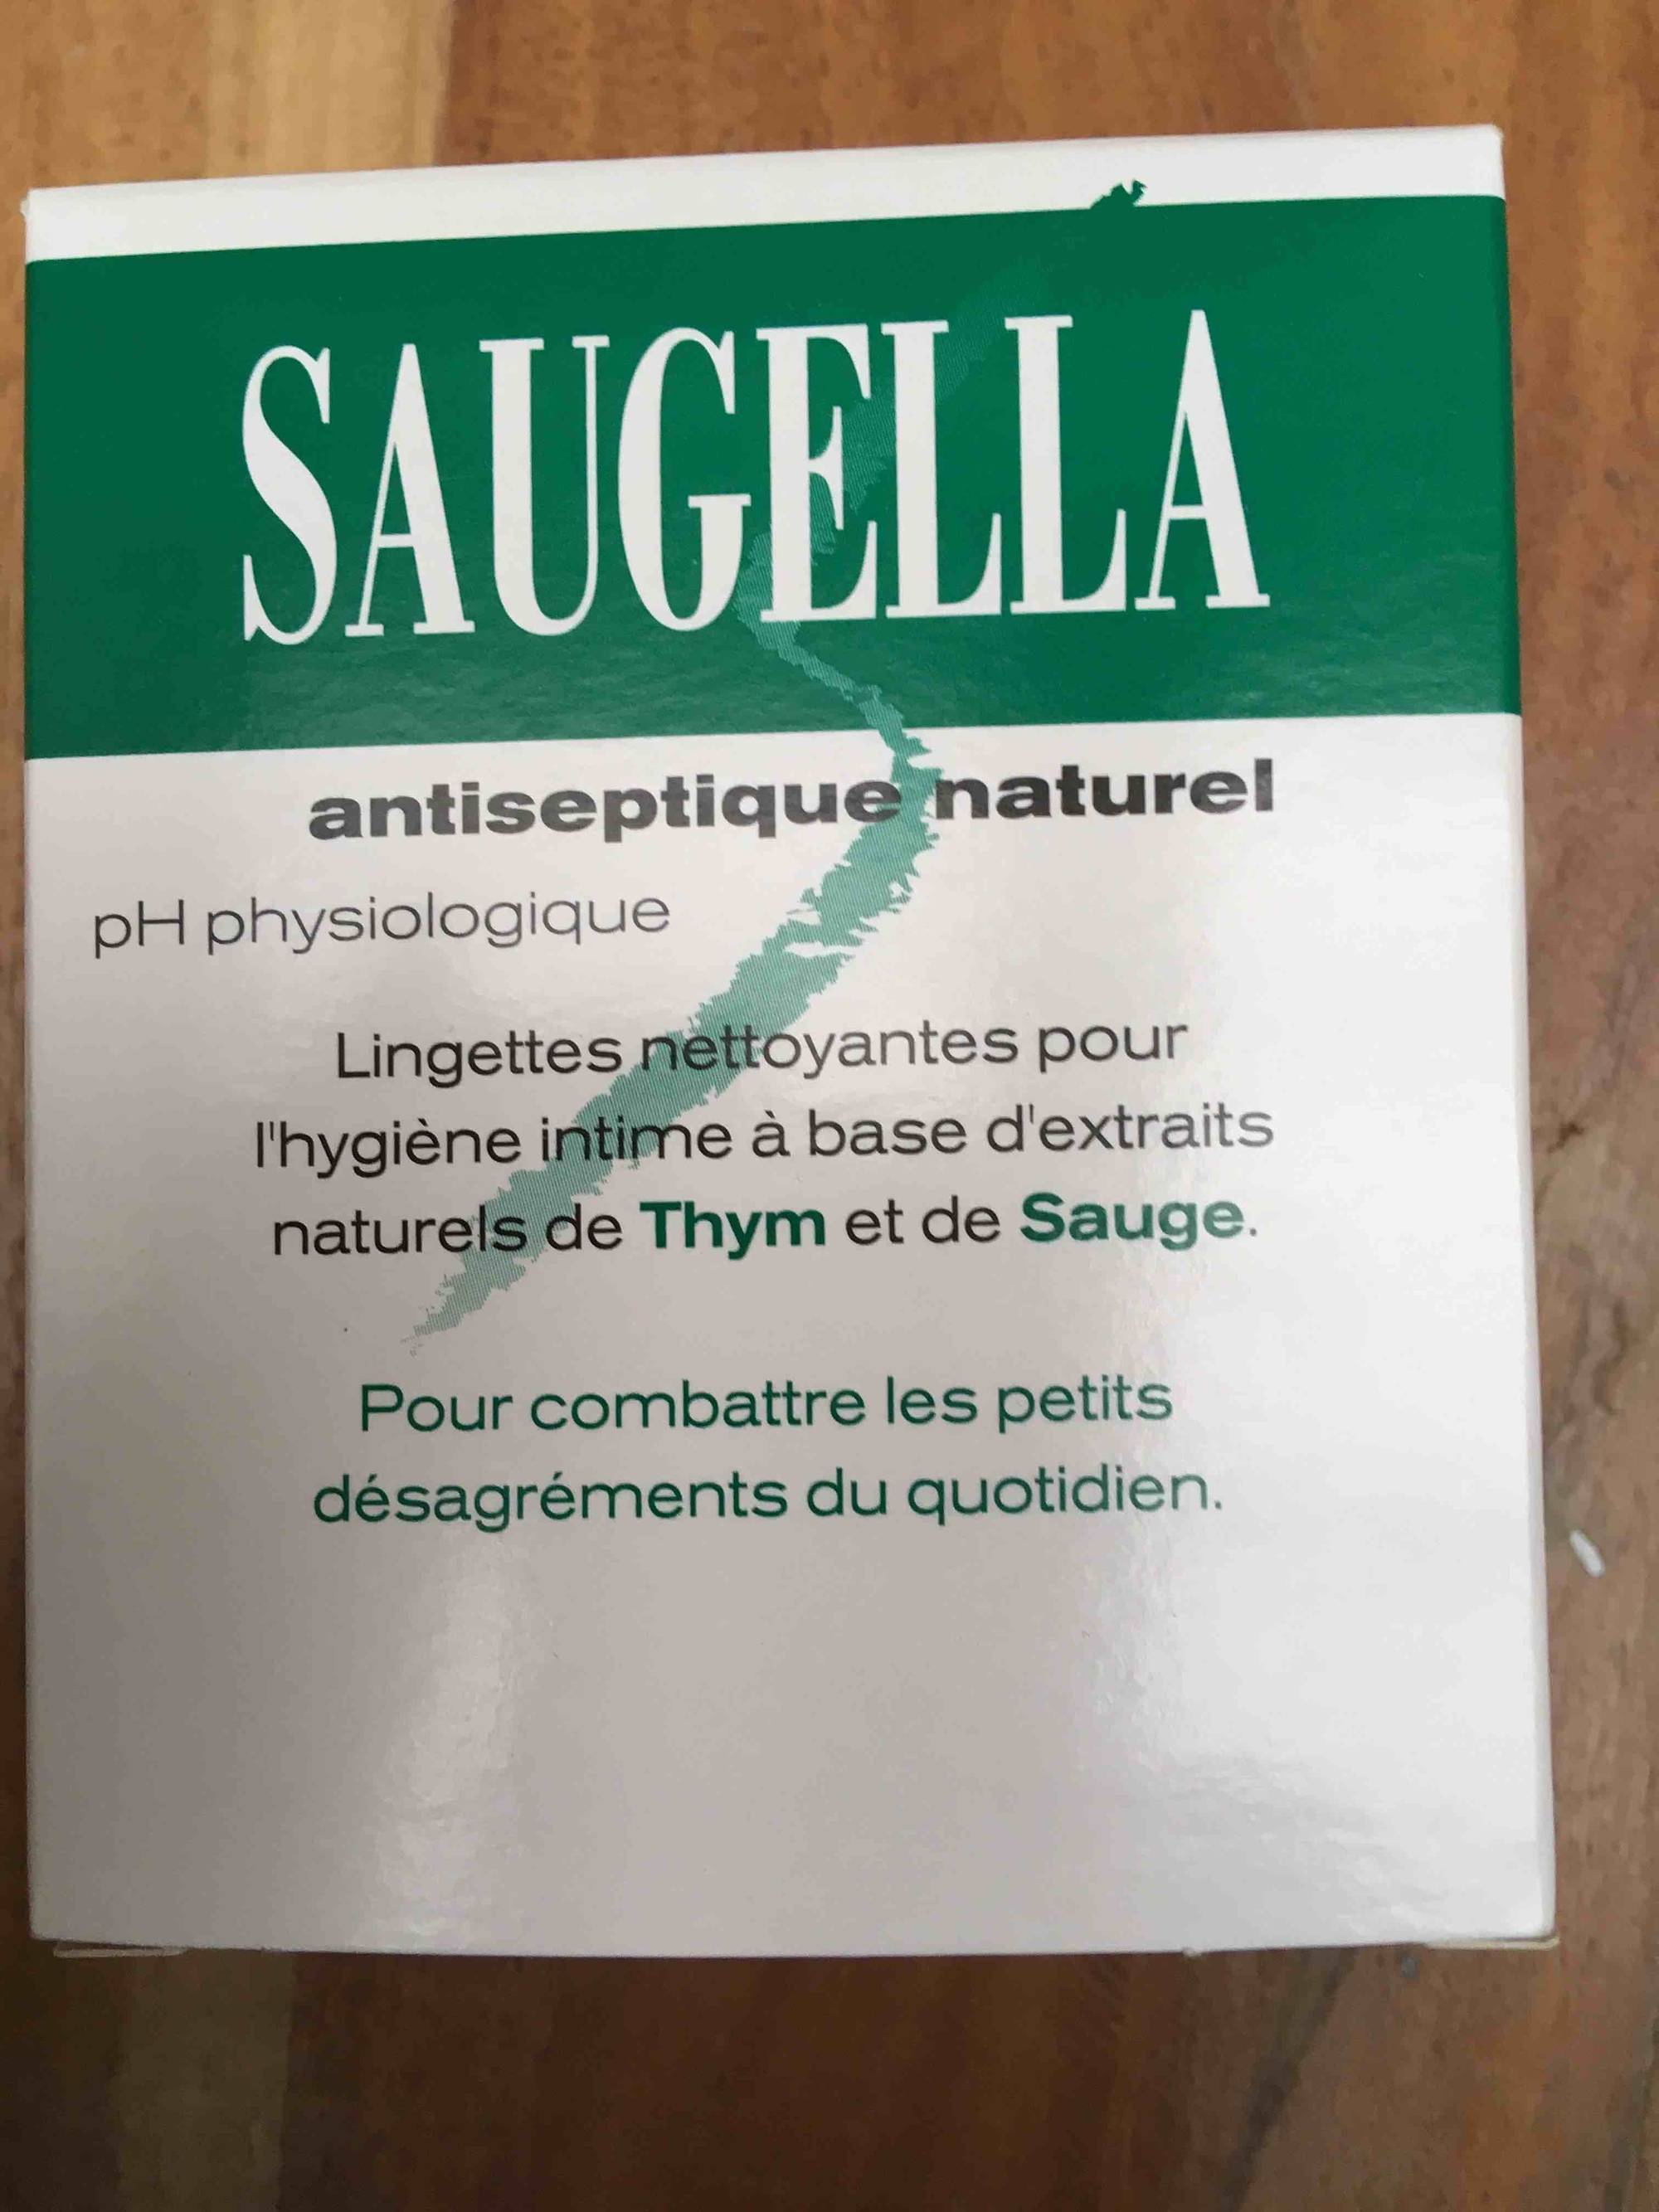 SAUGELLA - Antiseptique naturel Lingettes nettoyantes pour l'hygiène intime